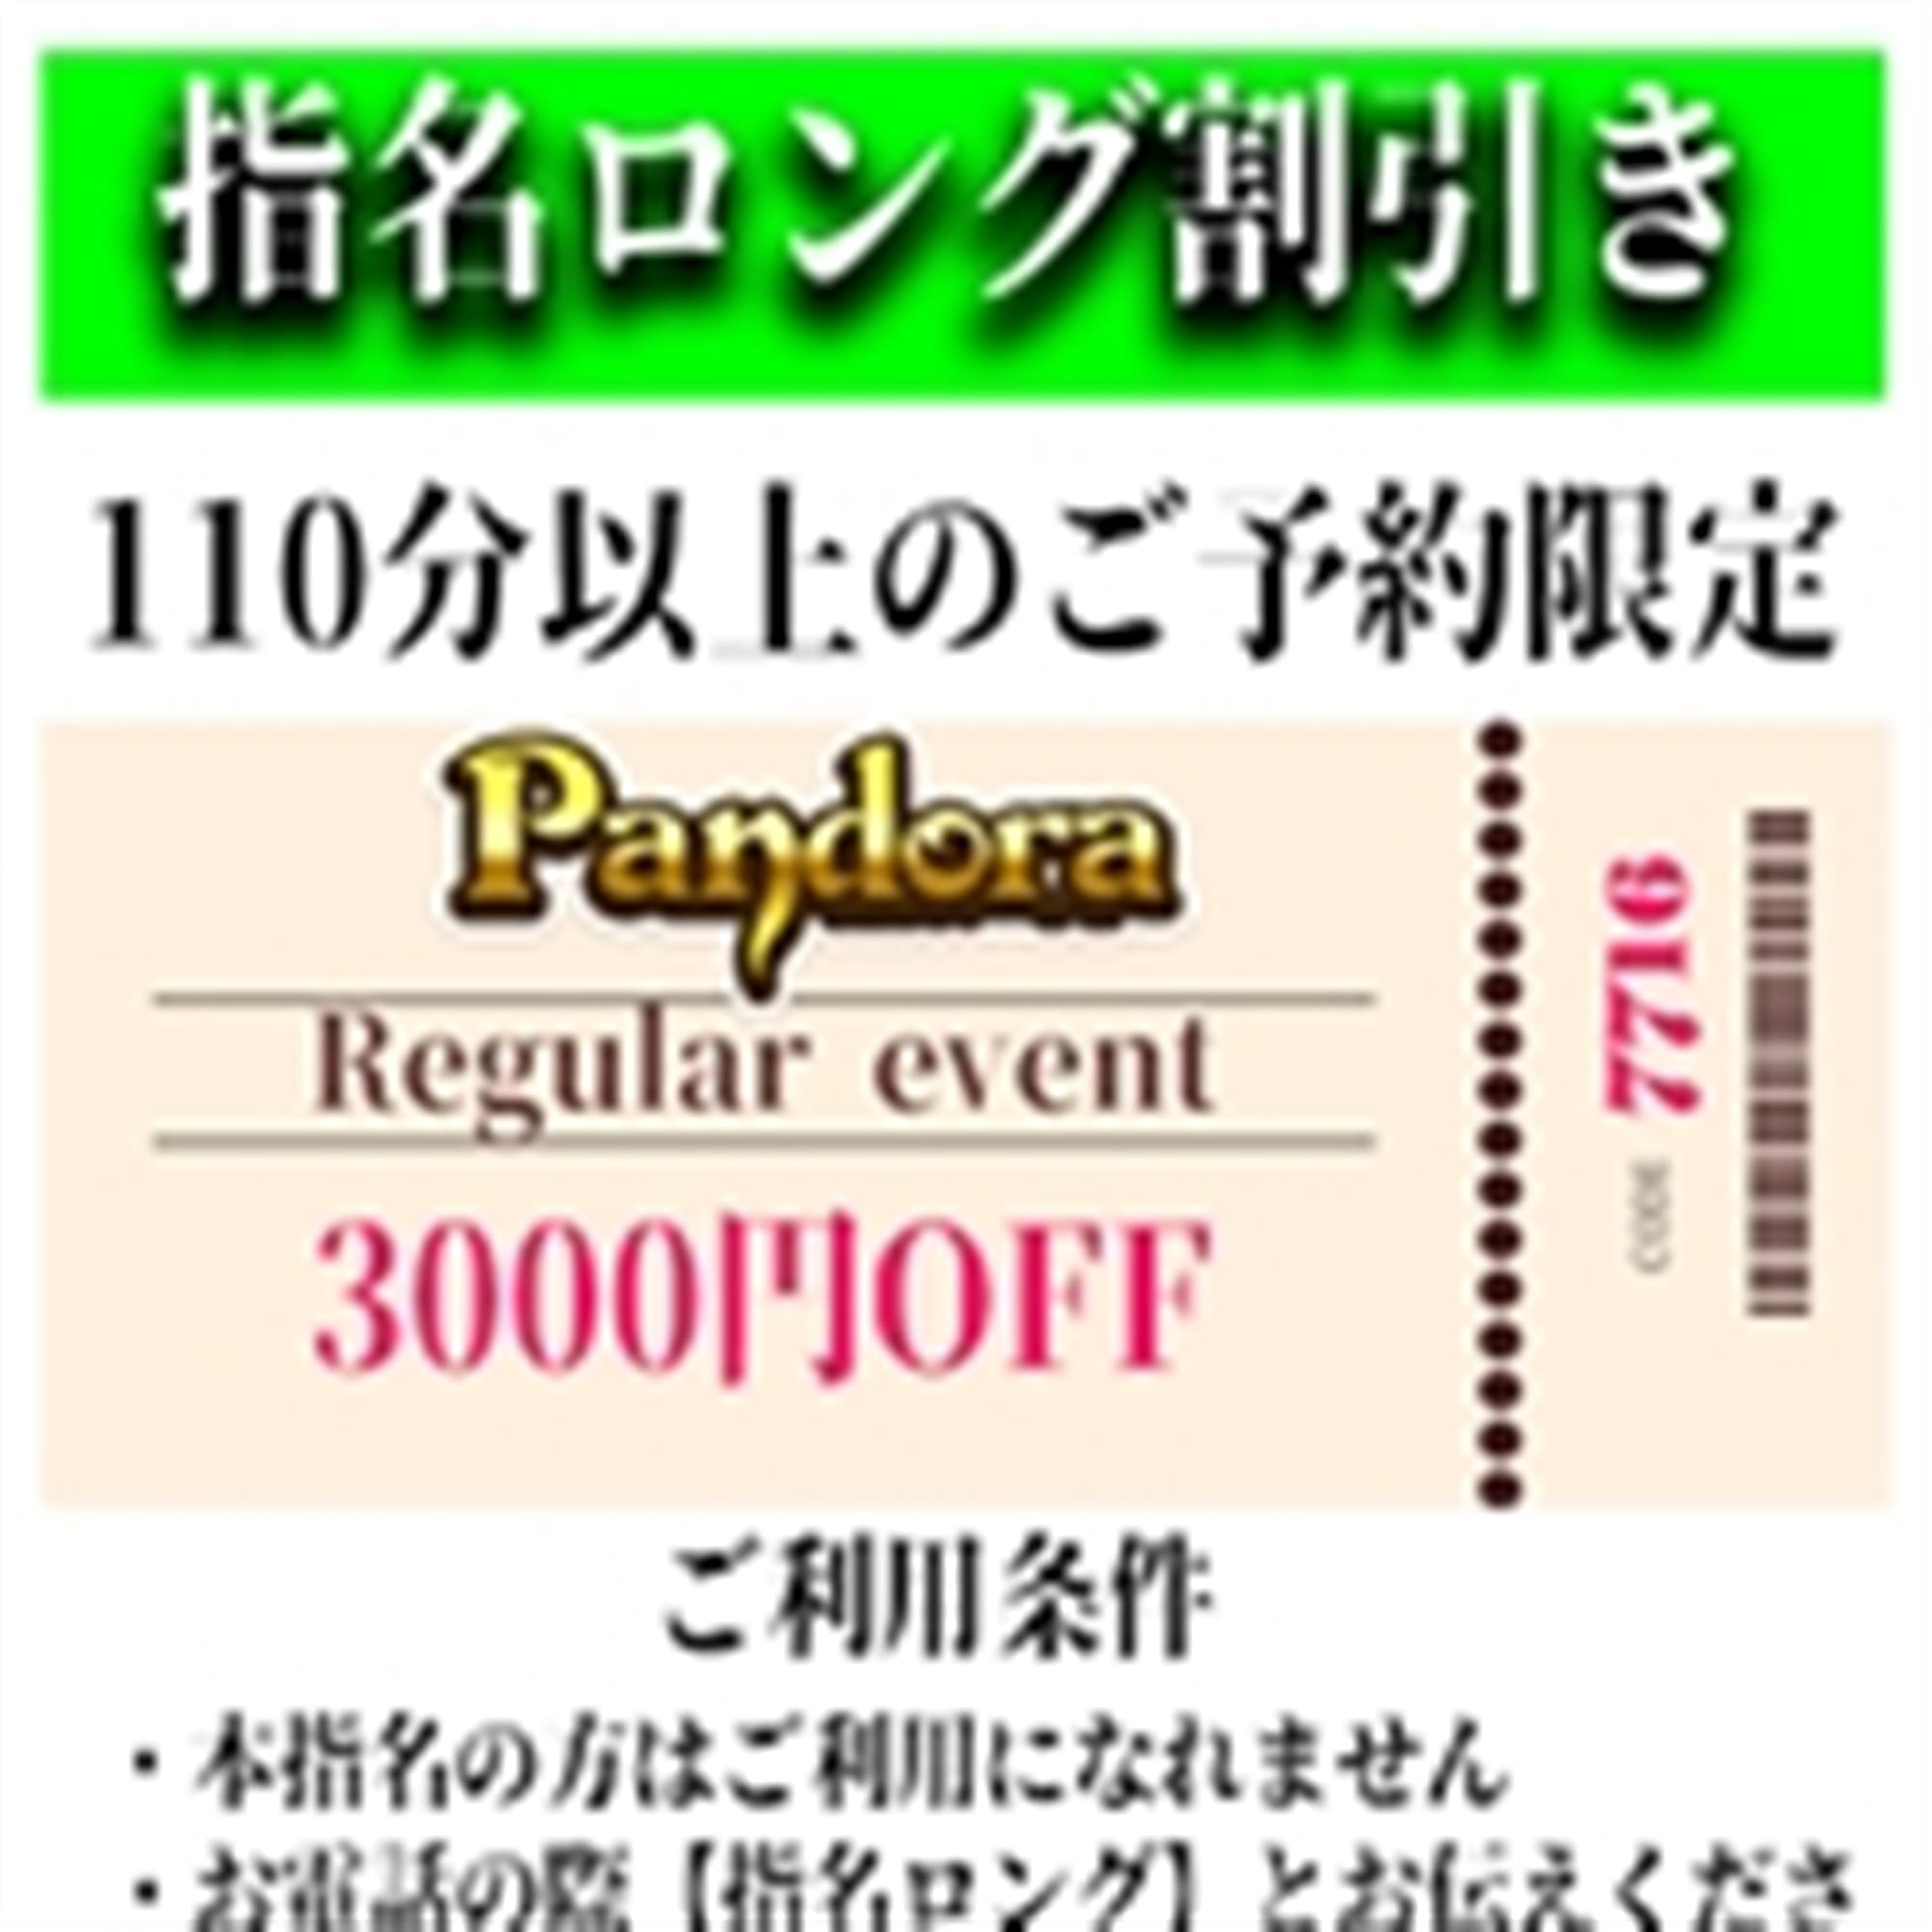 「ご指名のお客様も遊べるロングコース割引」04/26(金) 19:19 | Pandora(パンドラ)新潟のお得なニュース